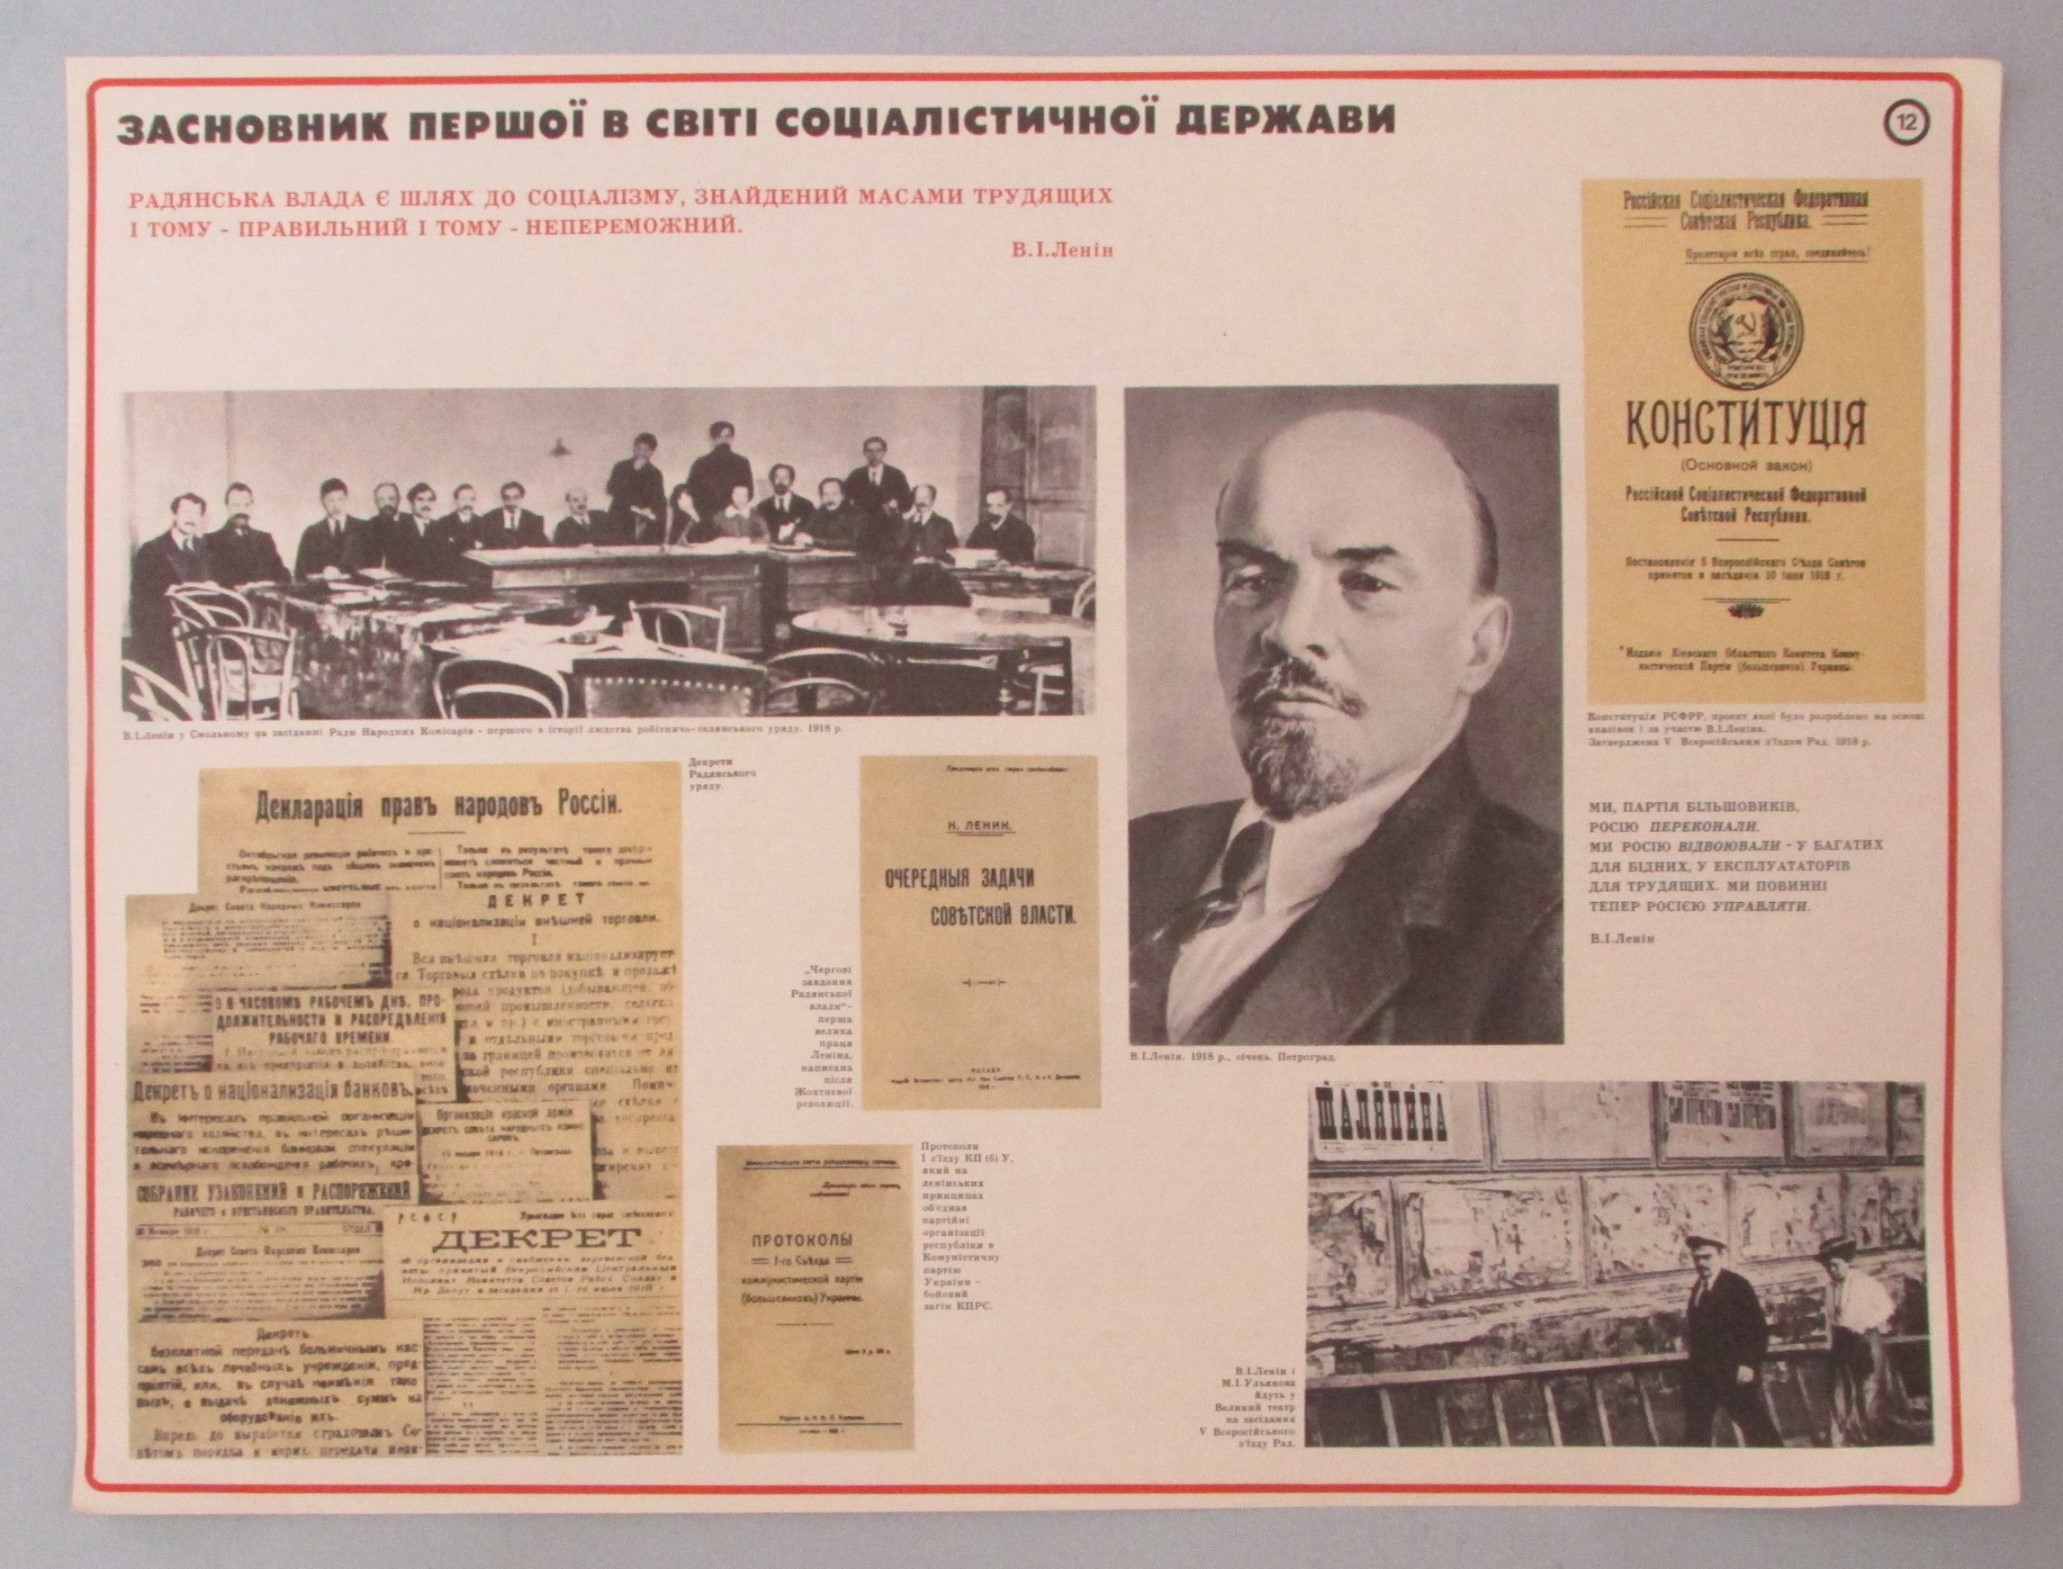 Плакат "В. І. Ленін. Засновник першої в світі соціалістичної держави. Наочний посібник з 24 таблиць"